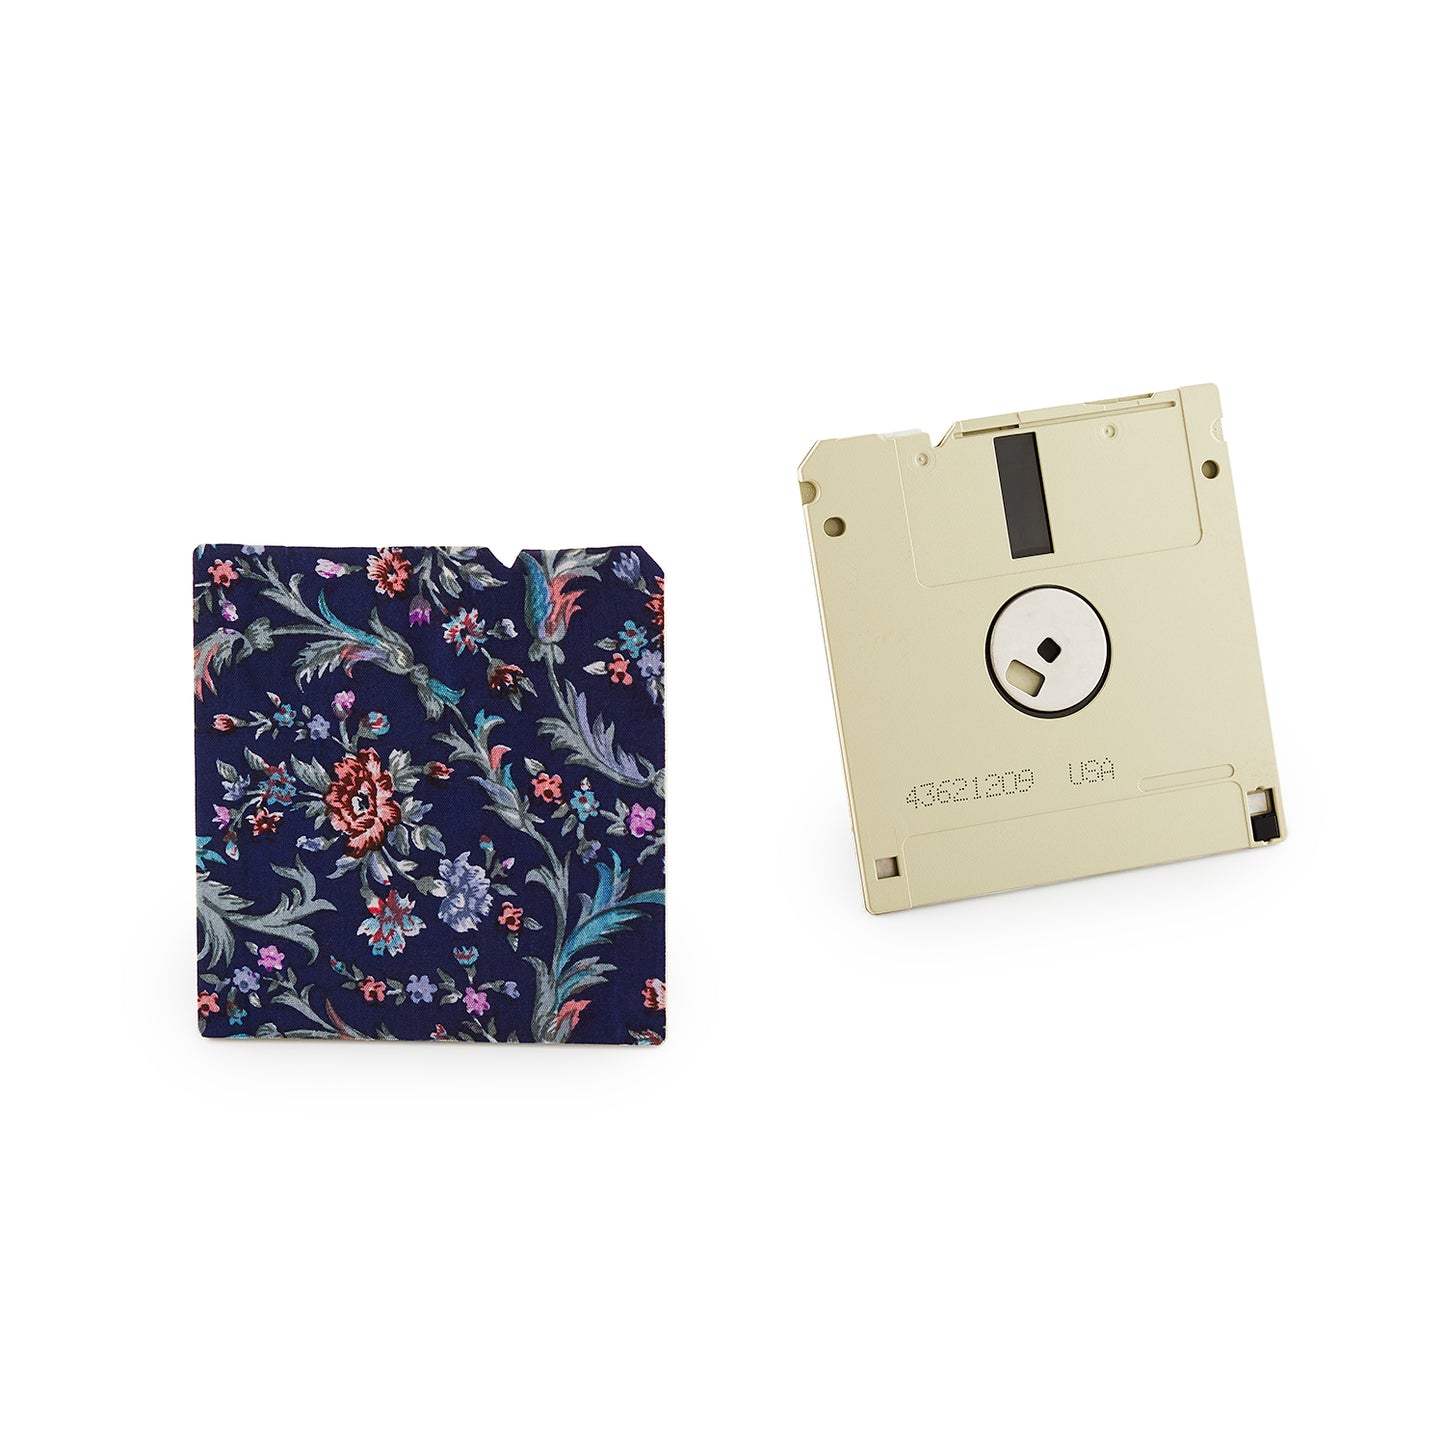 Denim Blue - Floppy Disk Coaster Set of 2